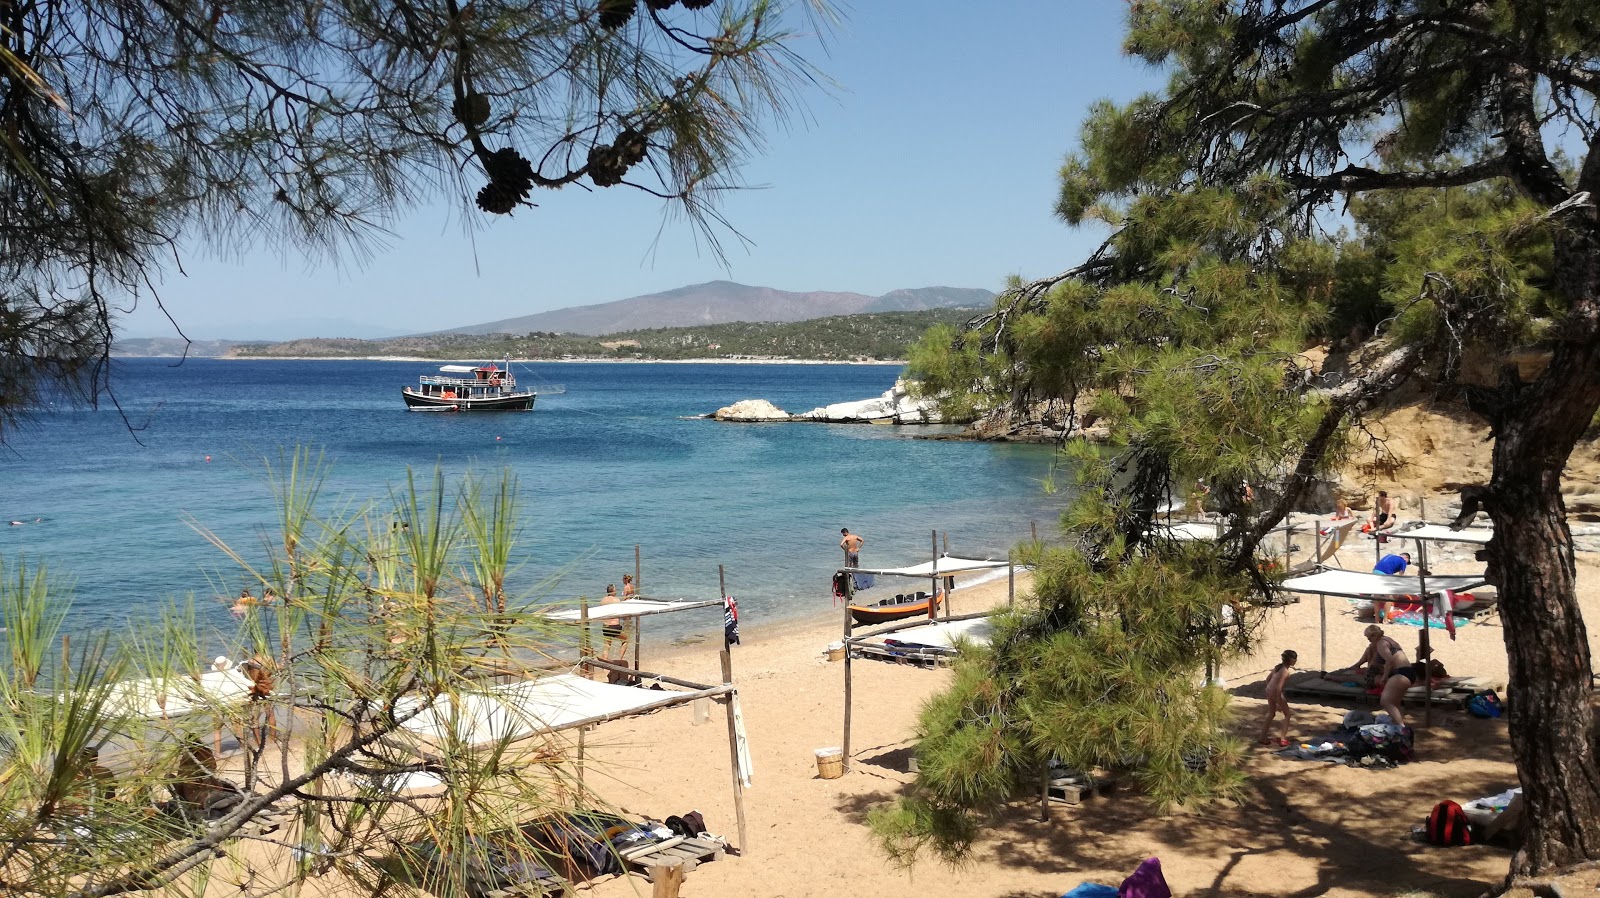 Fotografija Salonikios beach nahaja se v naravnem okolju